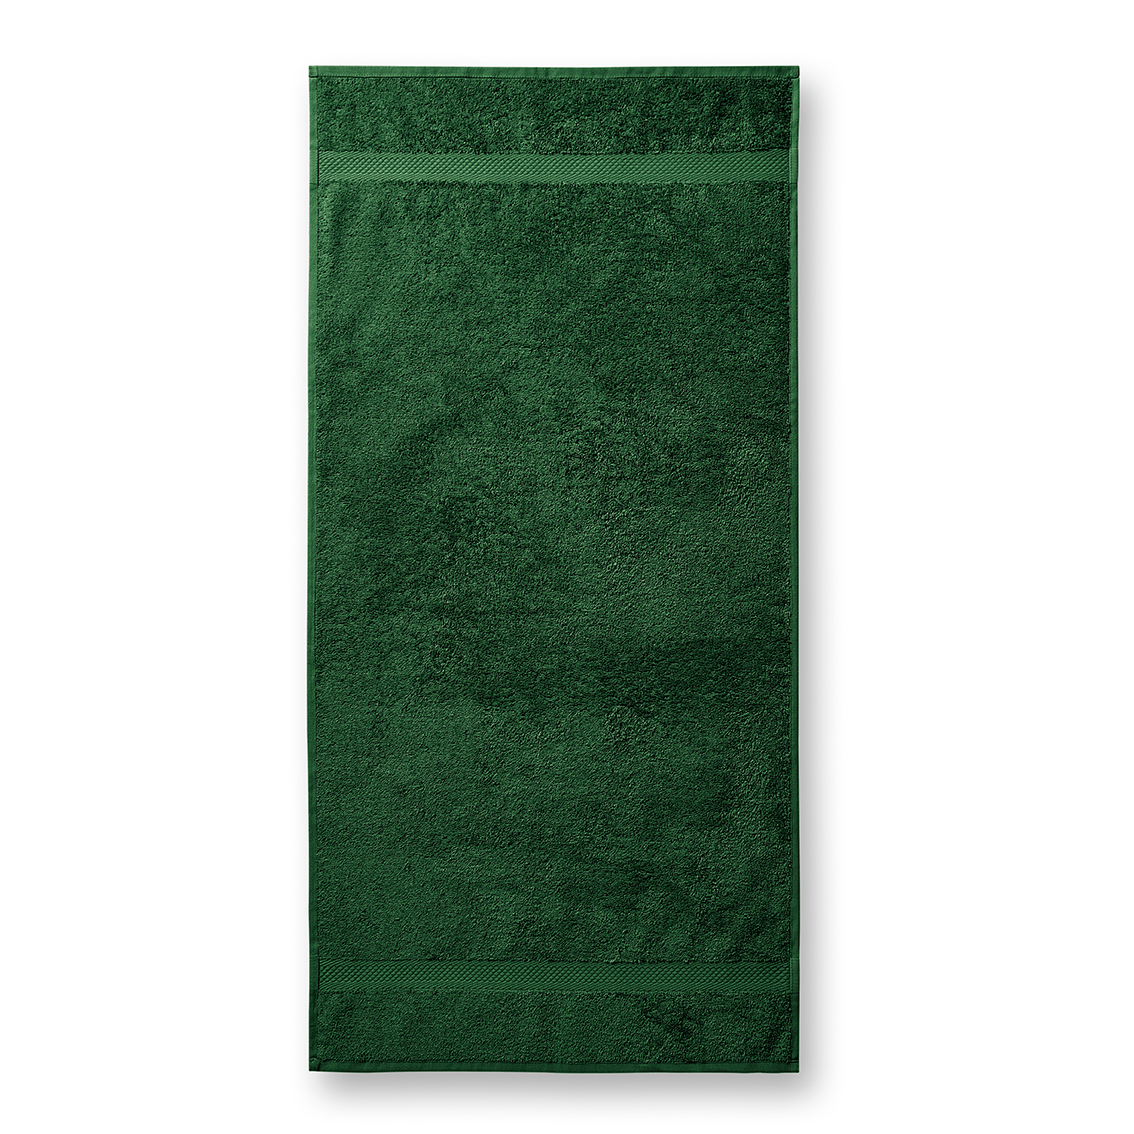 Ručník unisex Malfini Terry Towel - tmavě zelený, 50x100